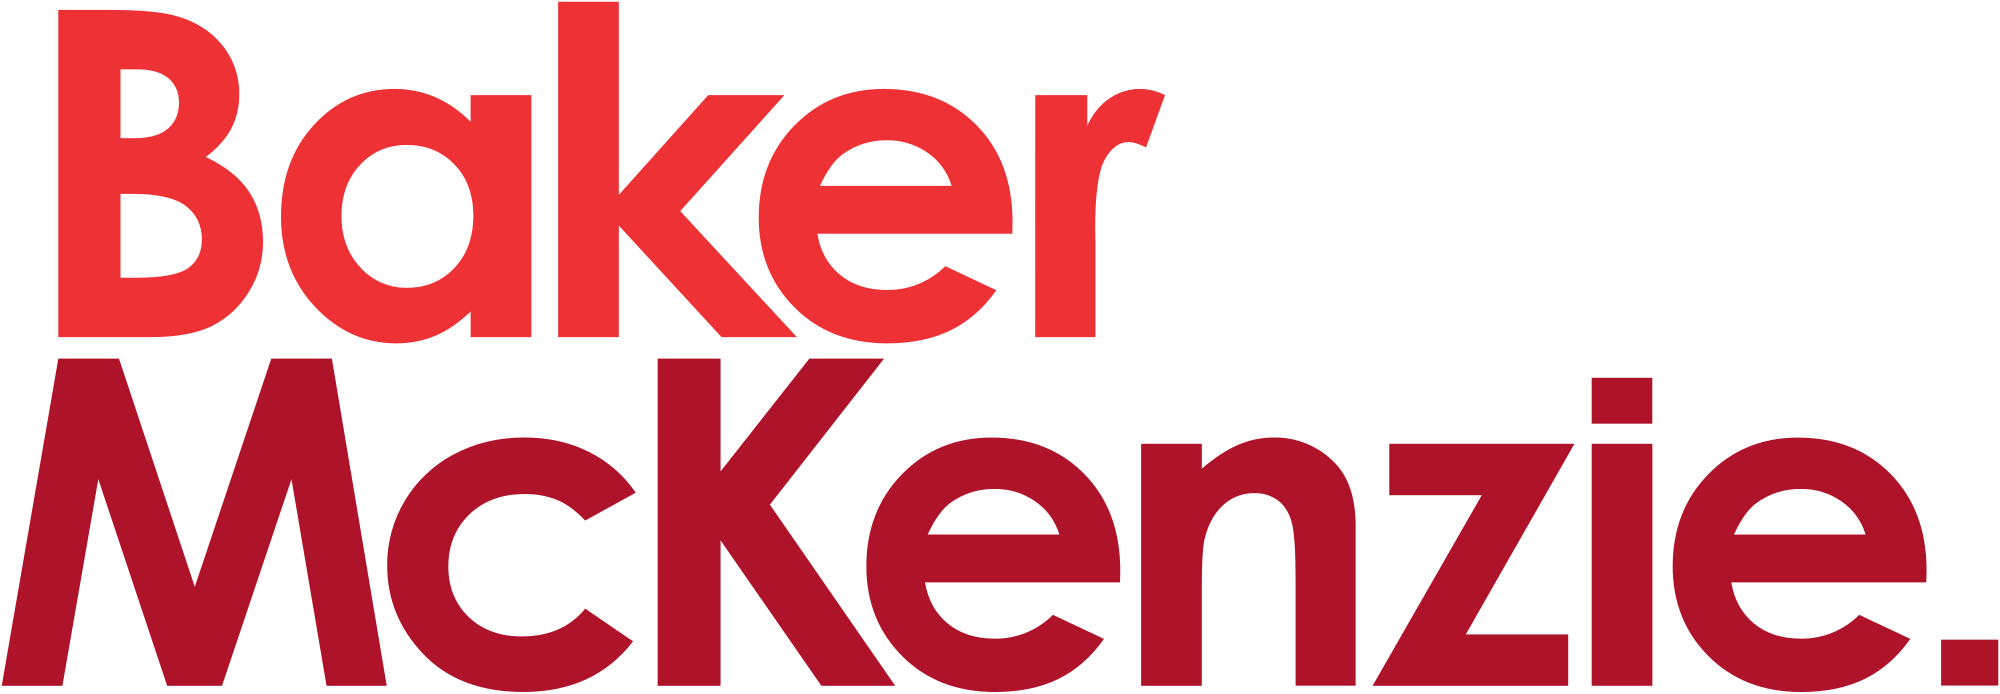 Baker_McKenzie_logo_(2016).svg.png